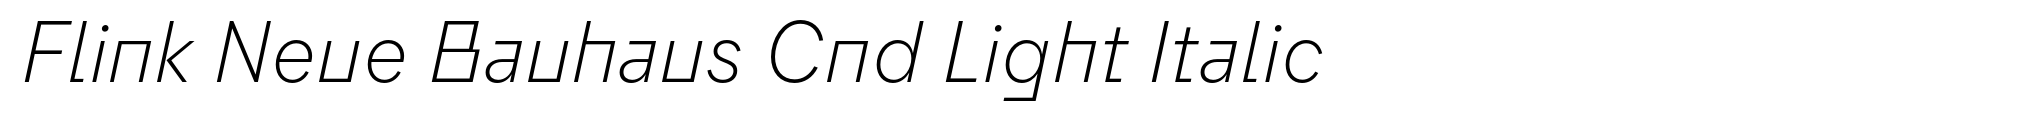 Flink Neue Bauhaus Cnd Light Italic image